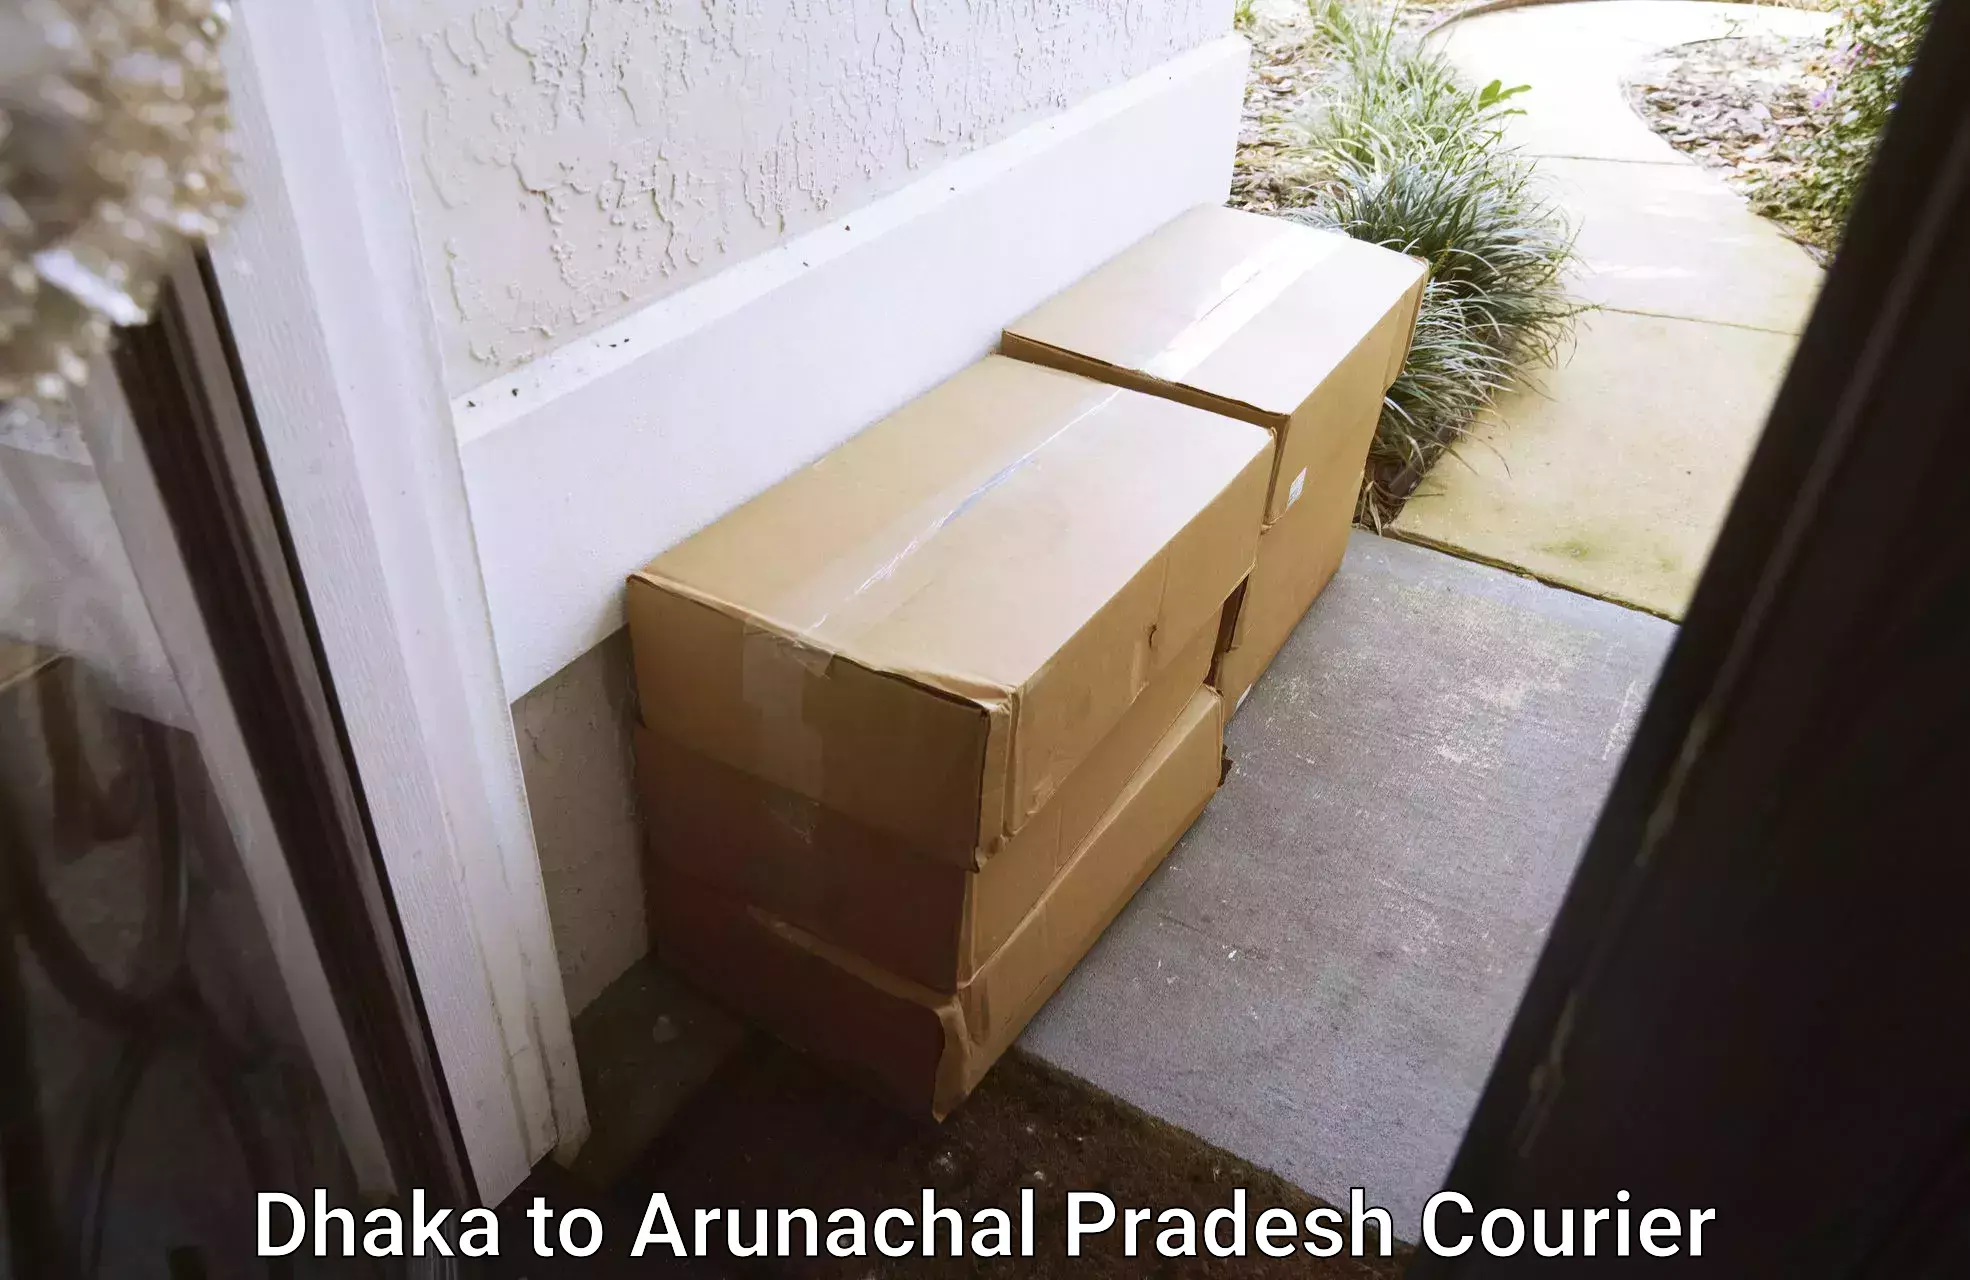 Stress-free household moving Dhaka to Arunachal Pradesh